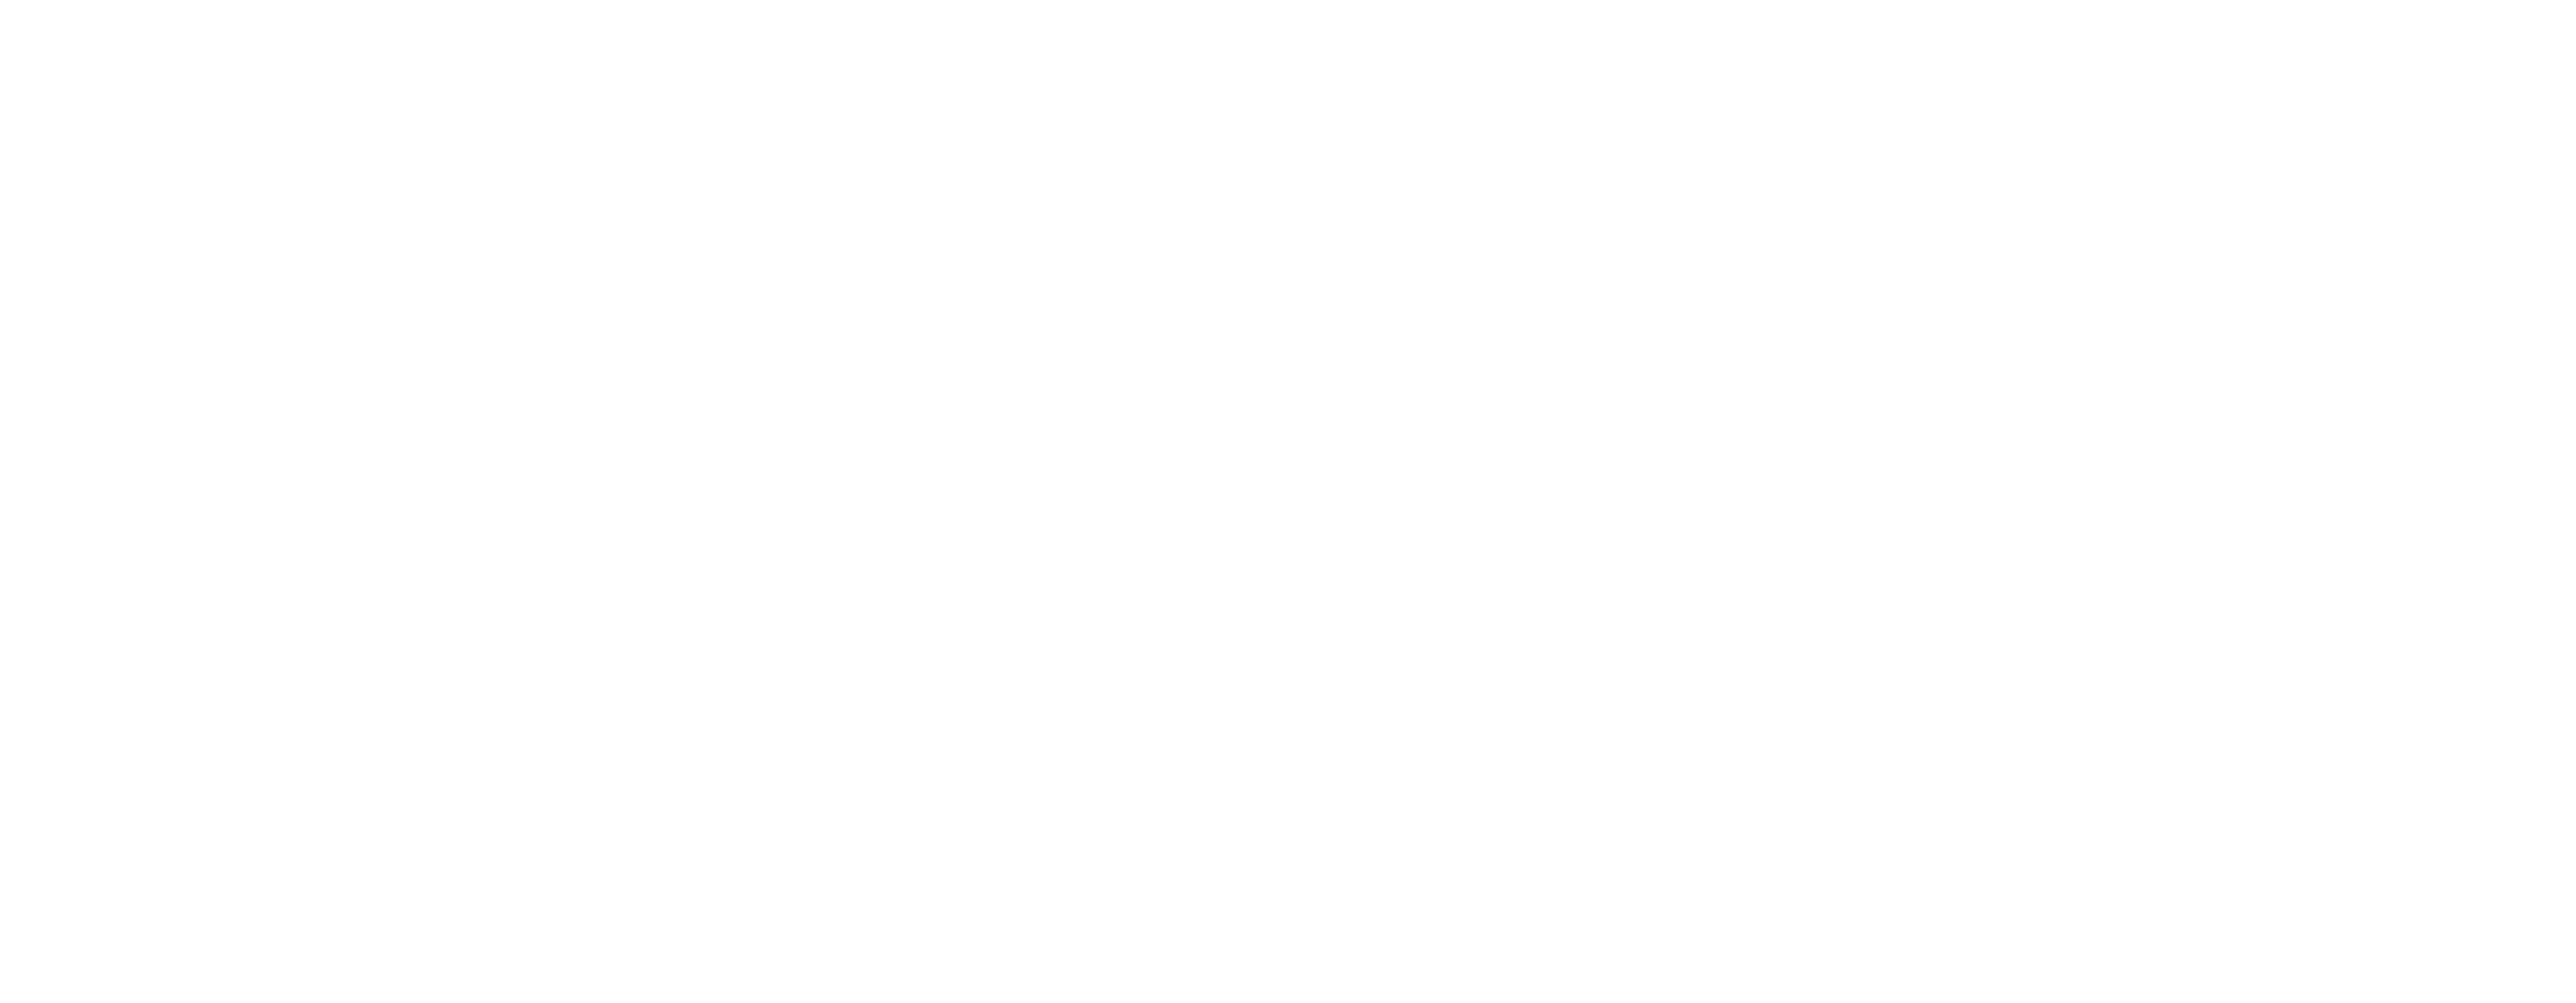 realtor mls logo transparent